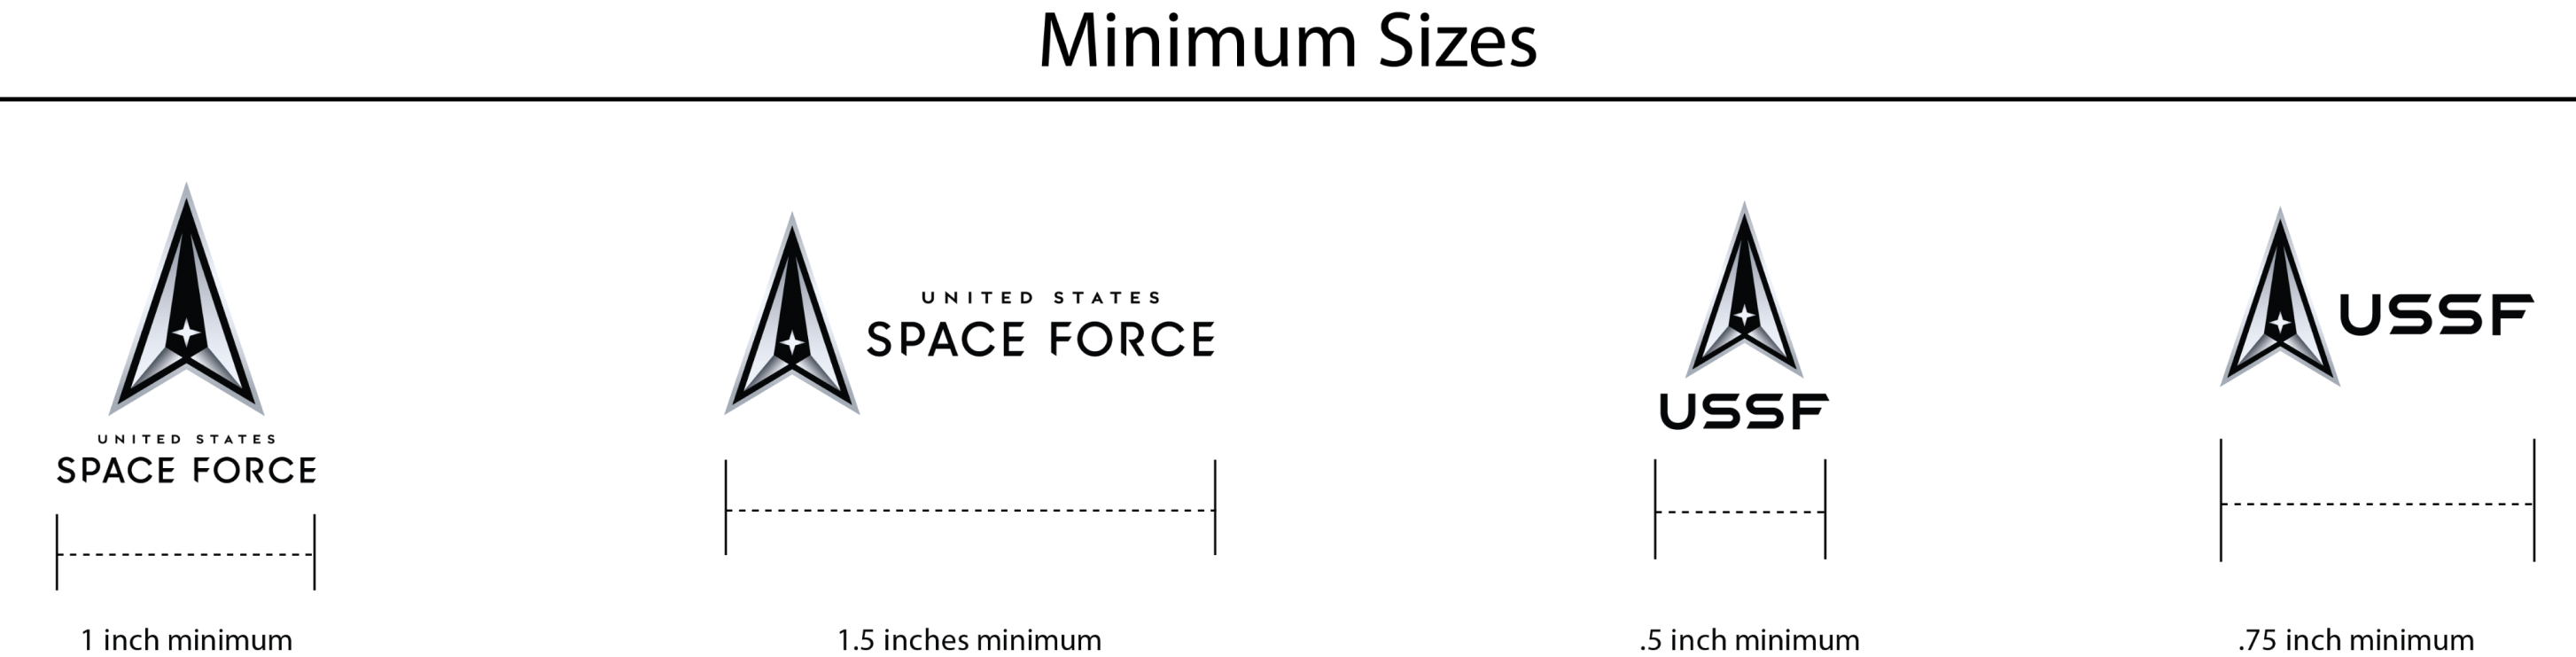 Image demonstrating Minimum Sizes